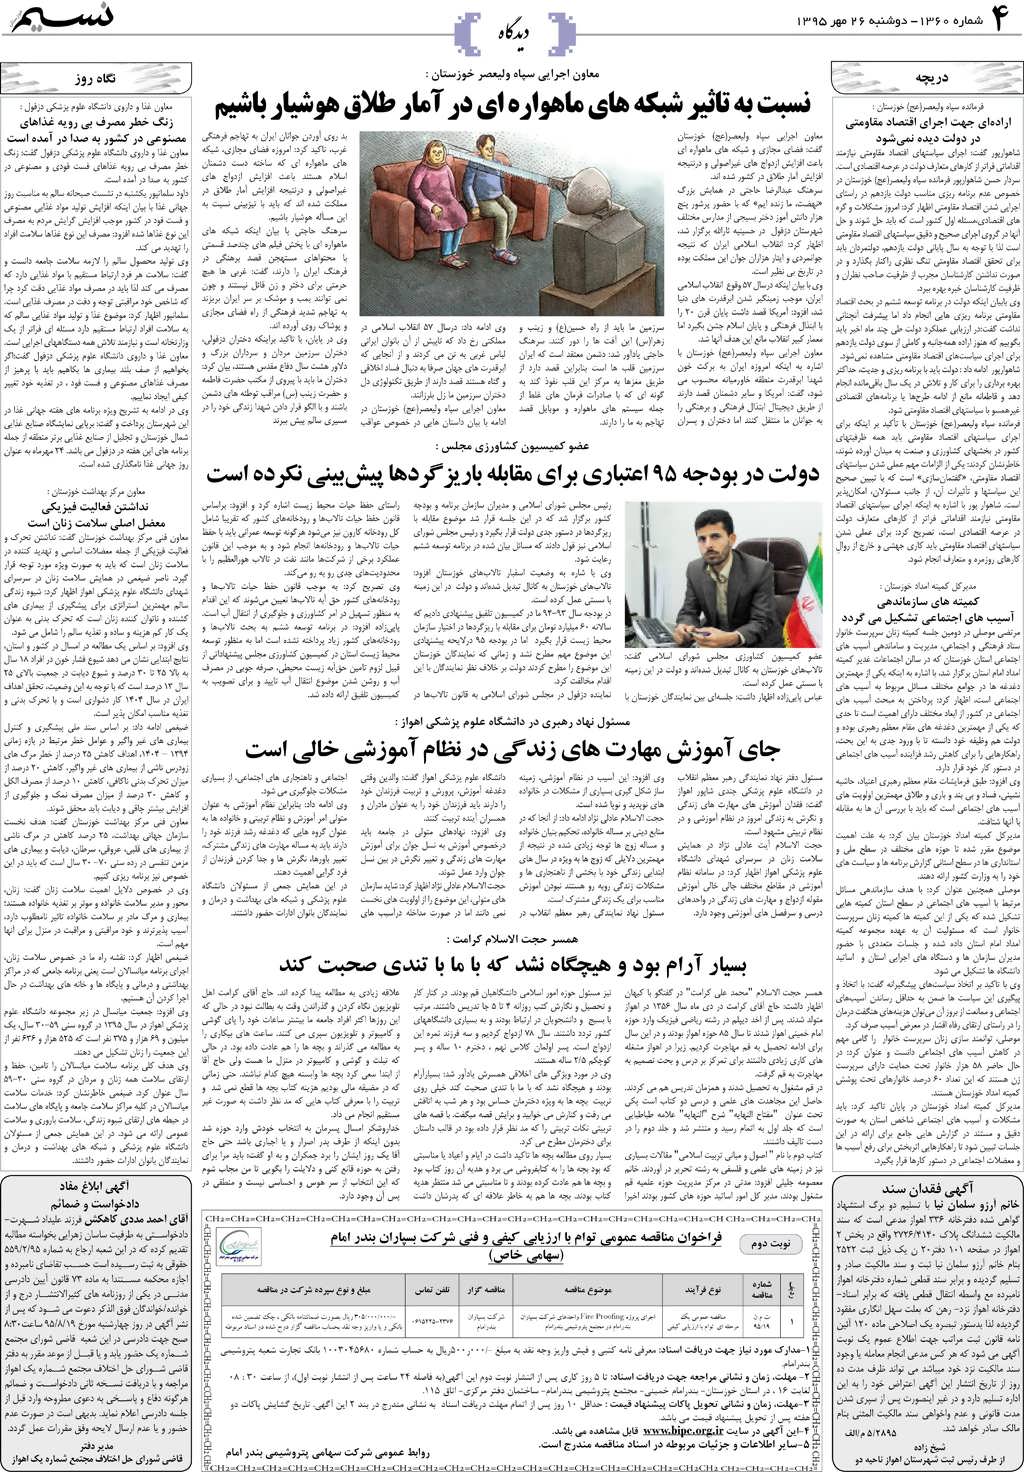 صفحه دیدگاه روزنامه نسیم شماره 1360